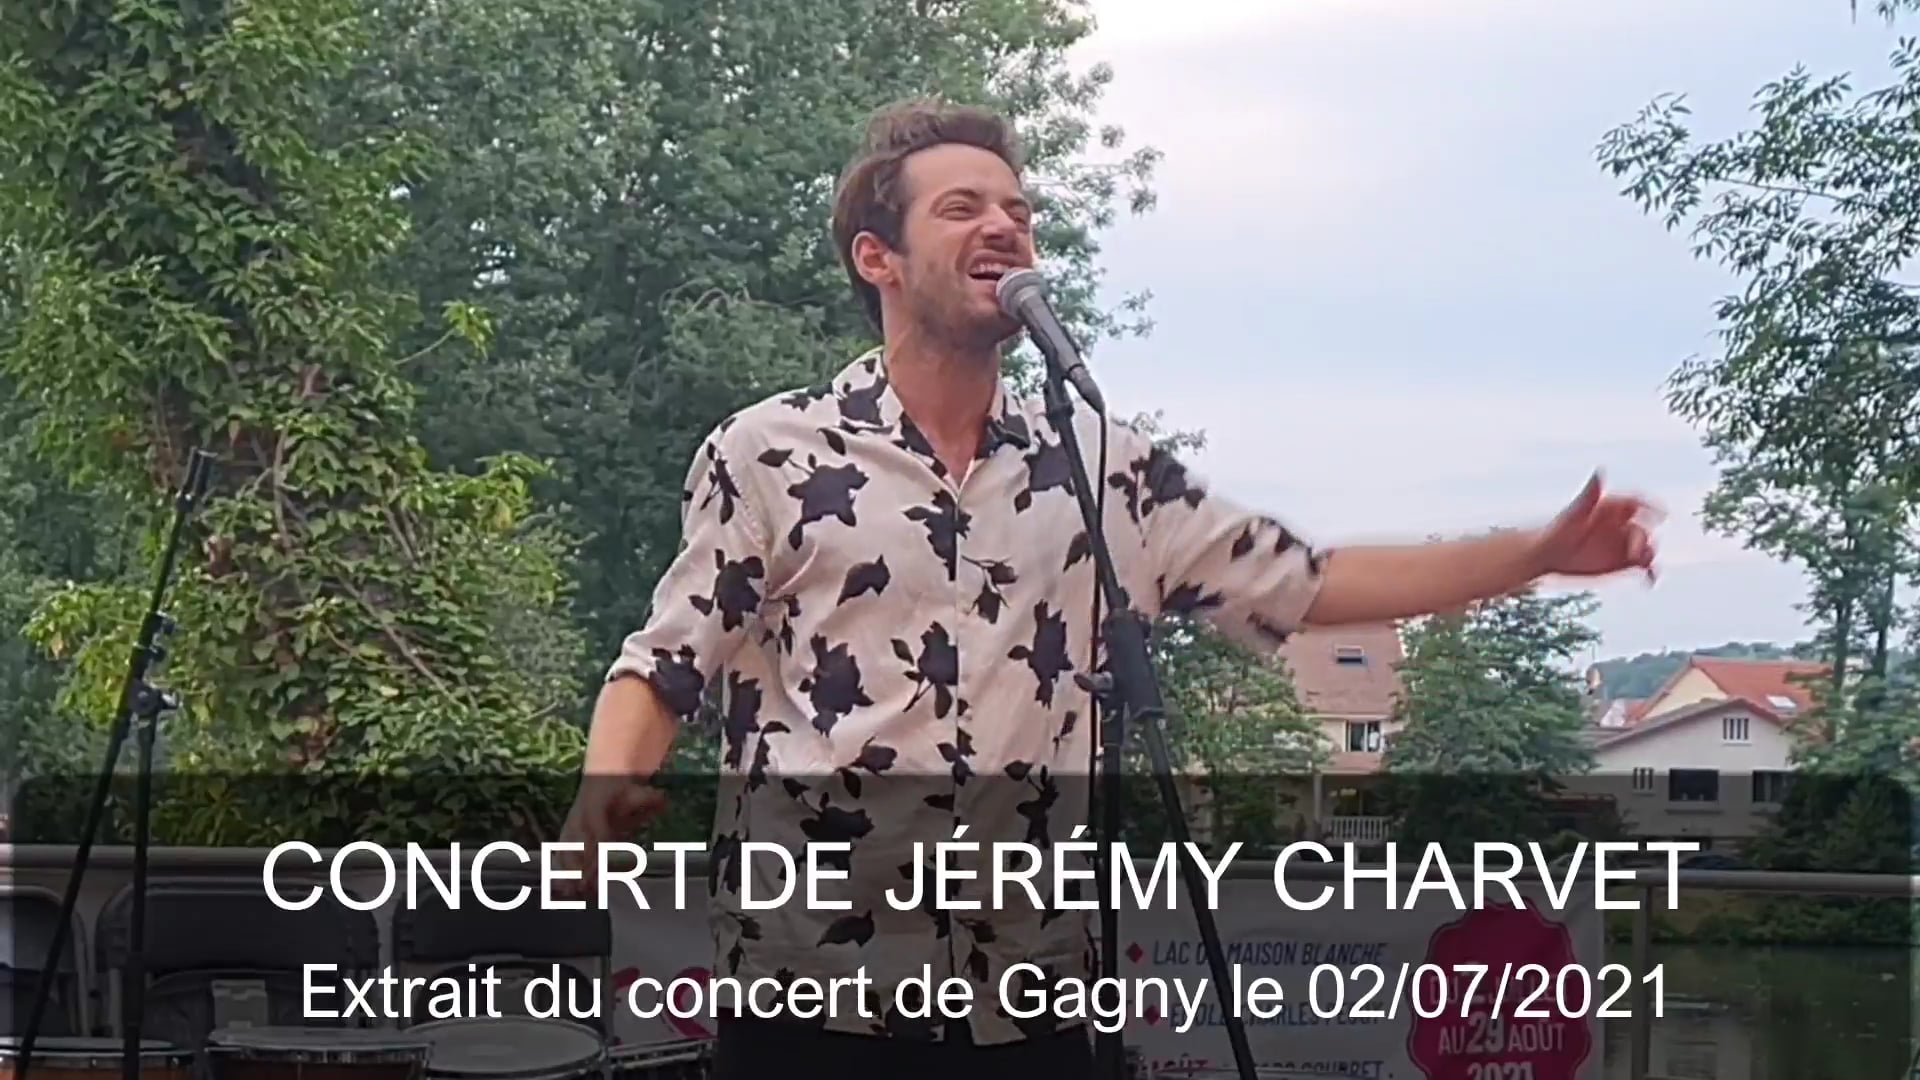 Concert de Jérémy Charvet - 02/07/2021